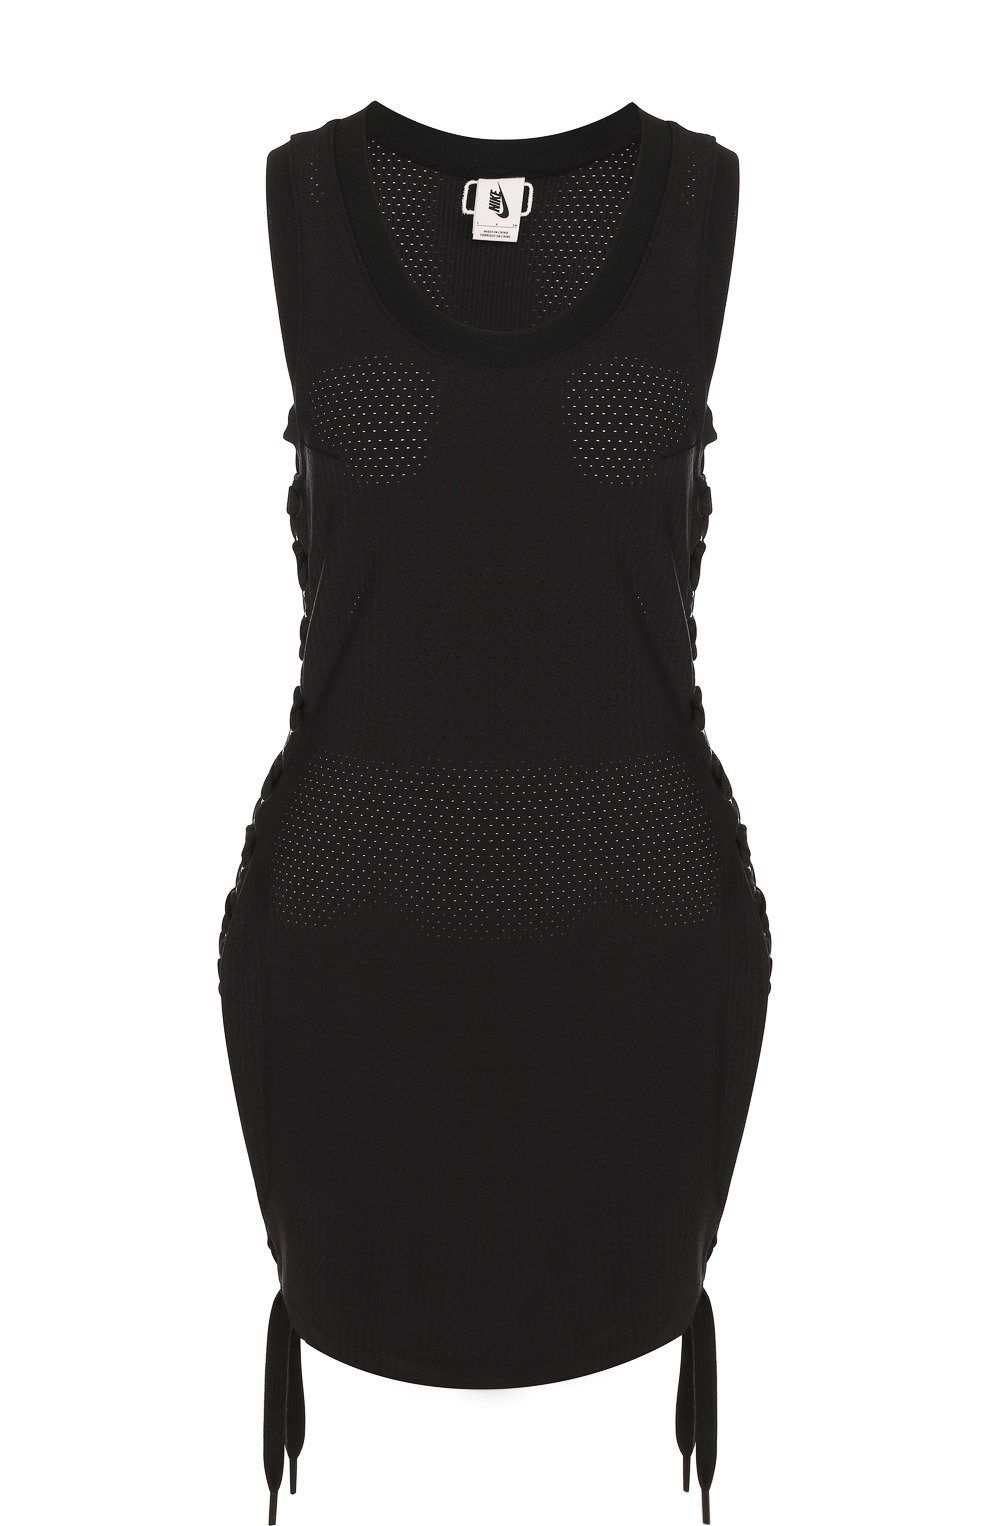 Перфорированное мини-платье с круглым вырезом NikeLab x Riccardo Tisci NikeLab